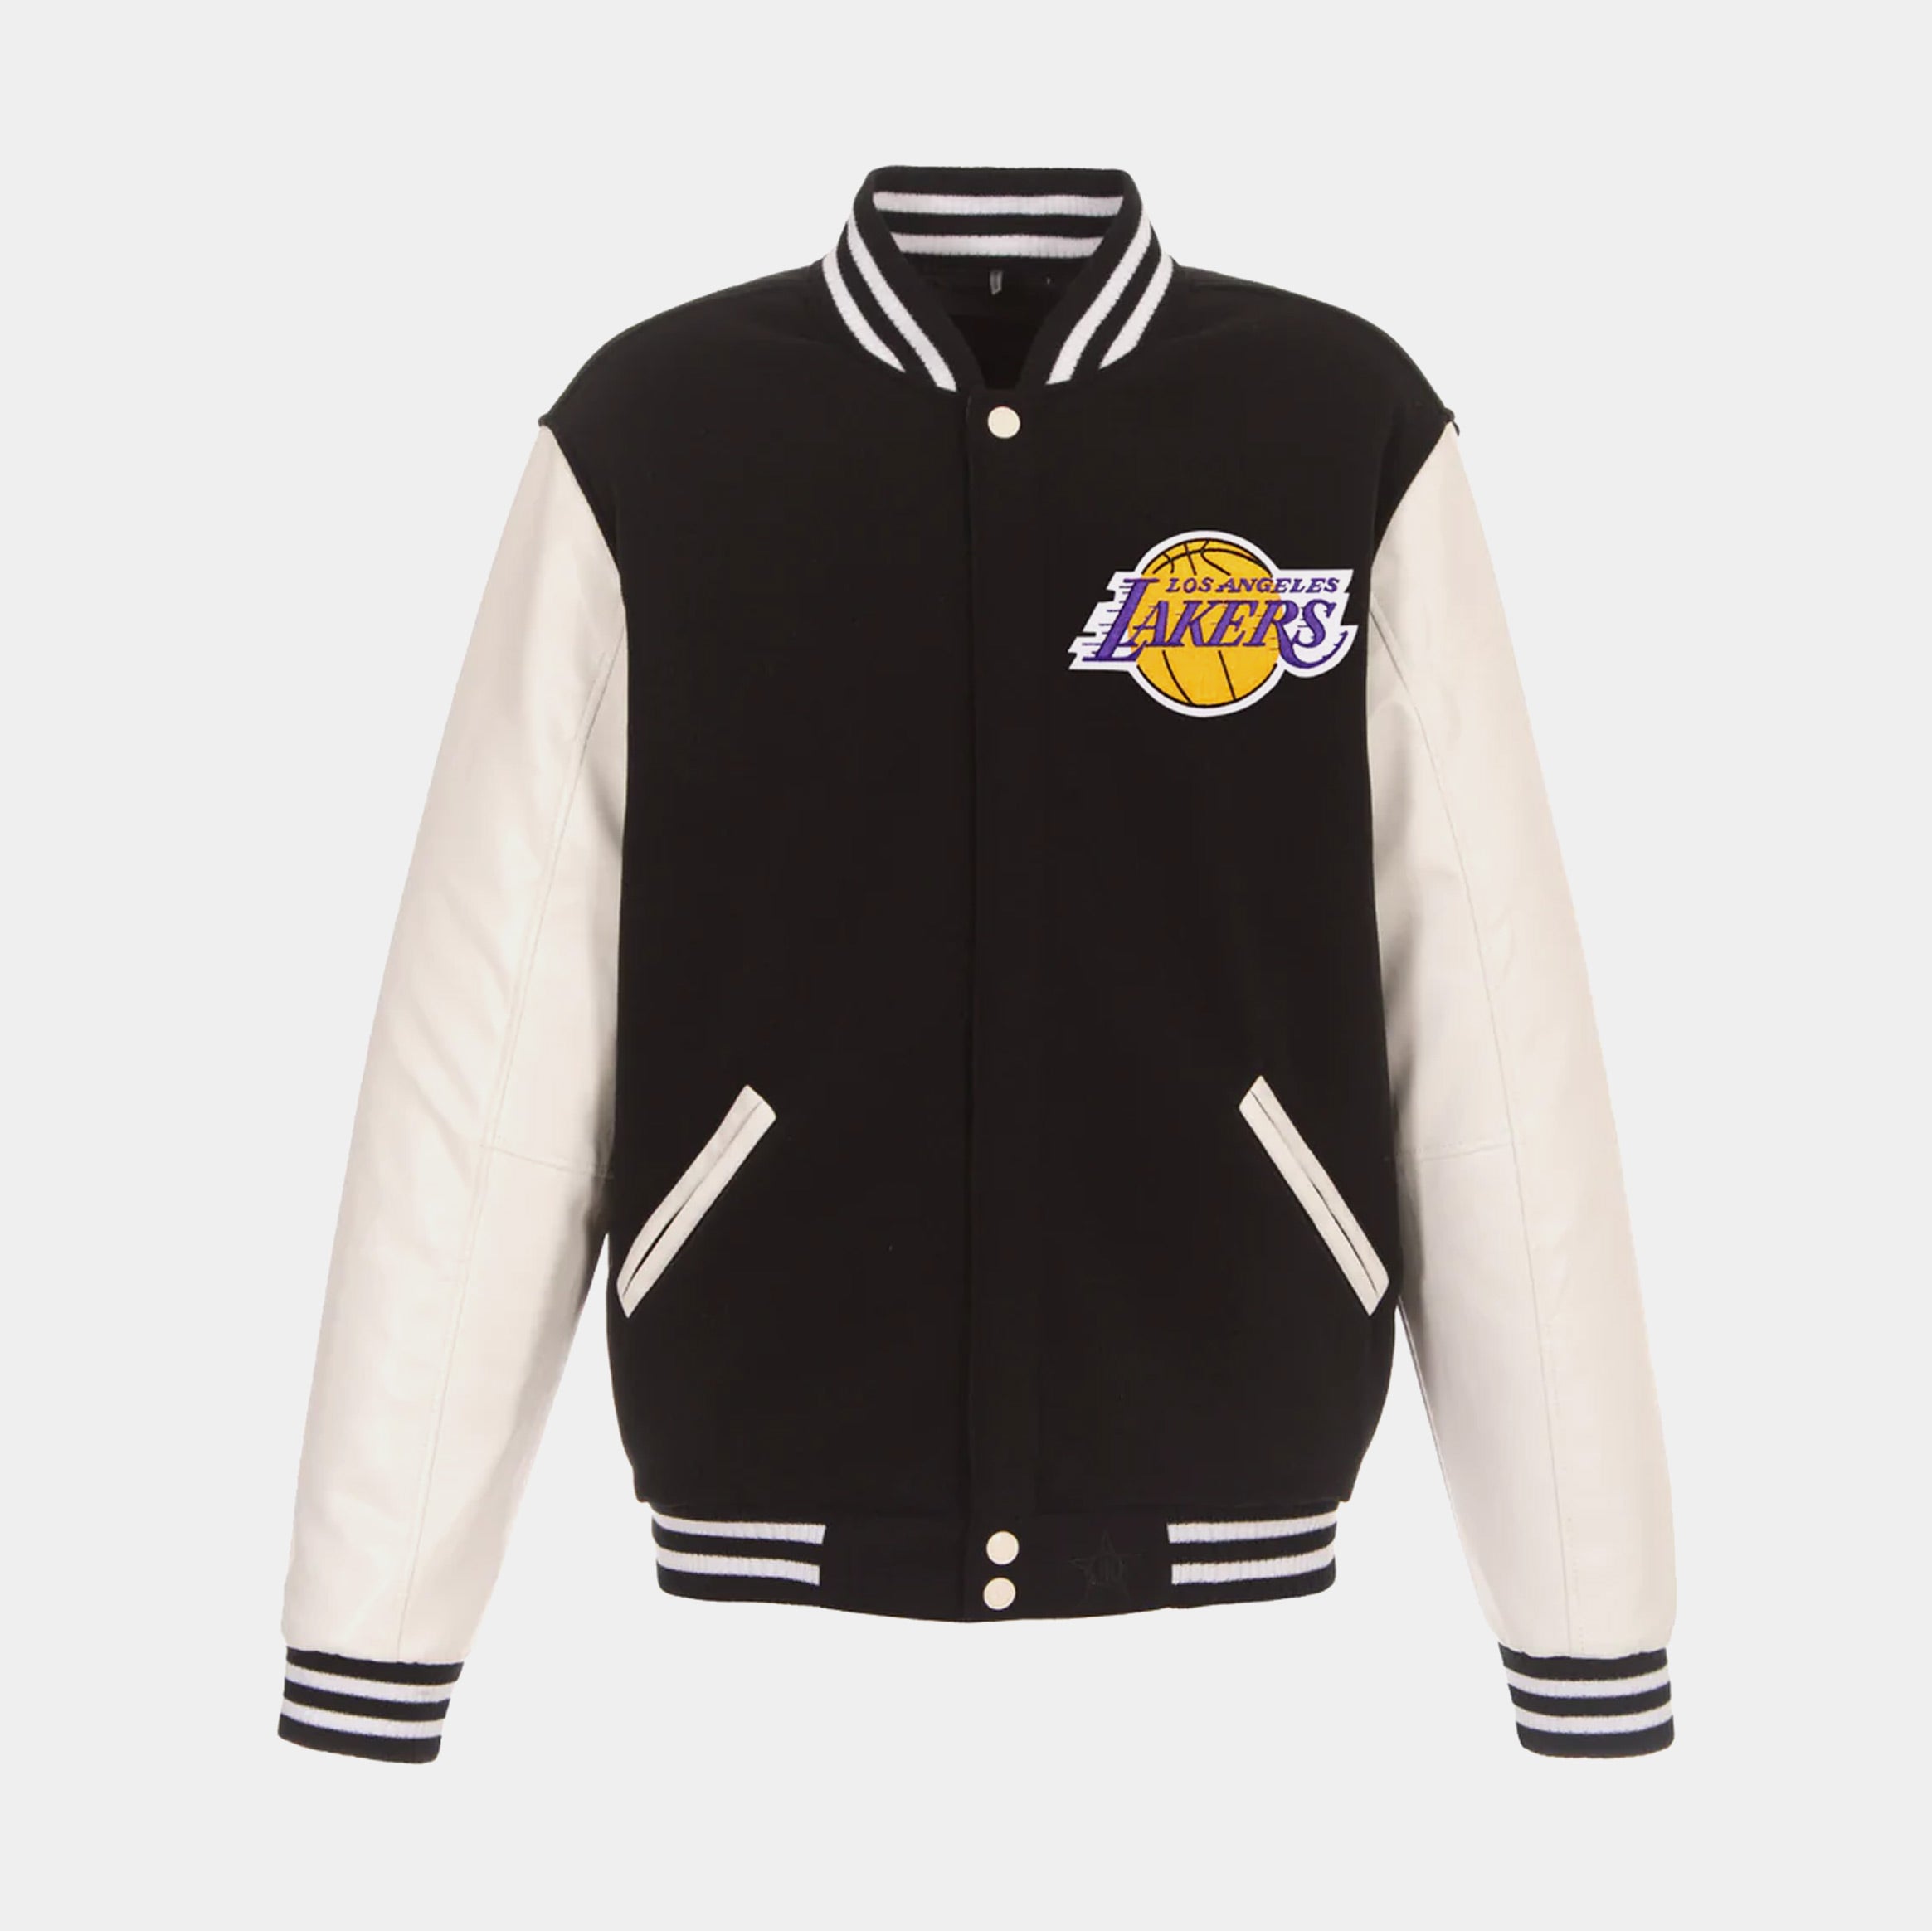 Lakers Jacket White